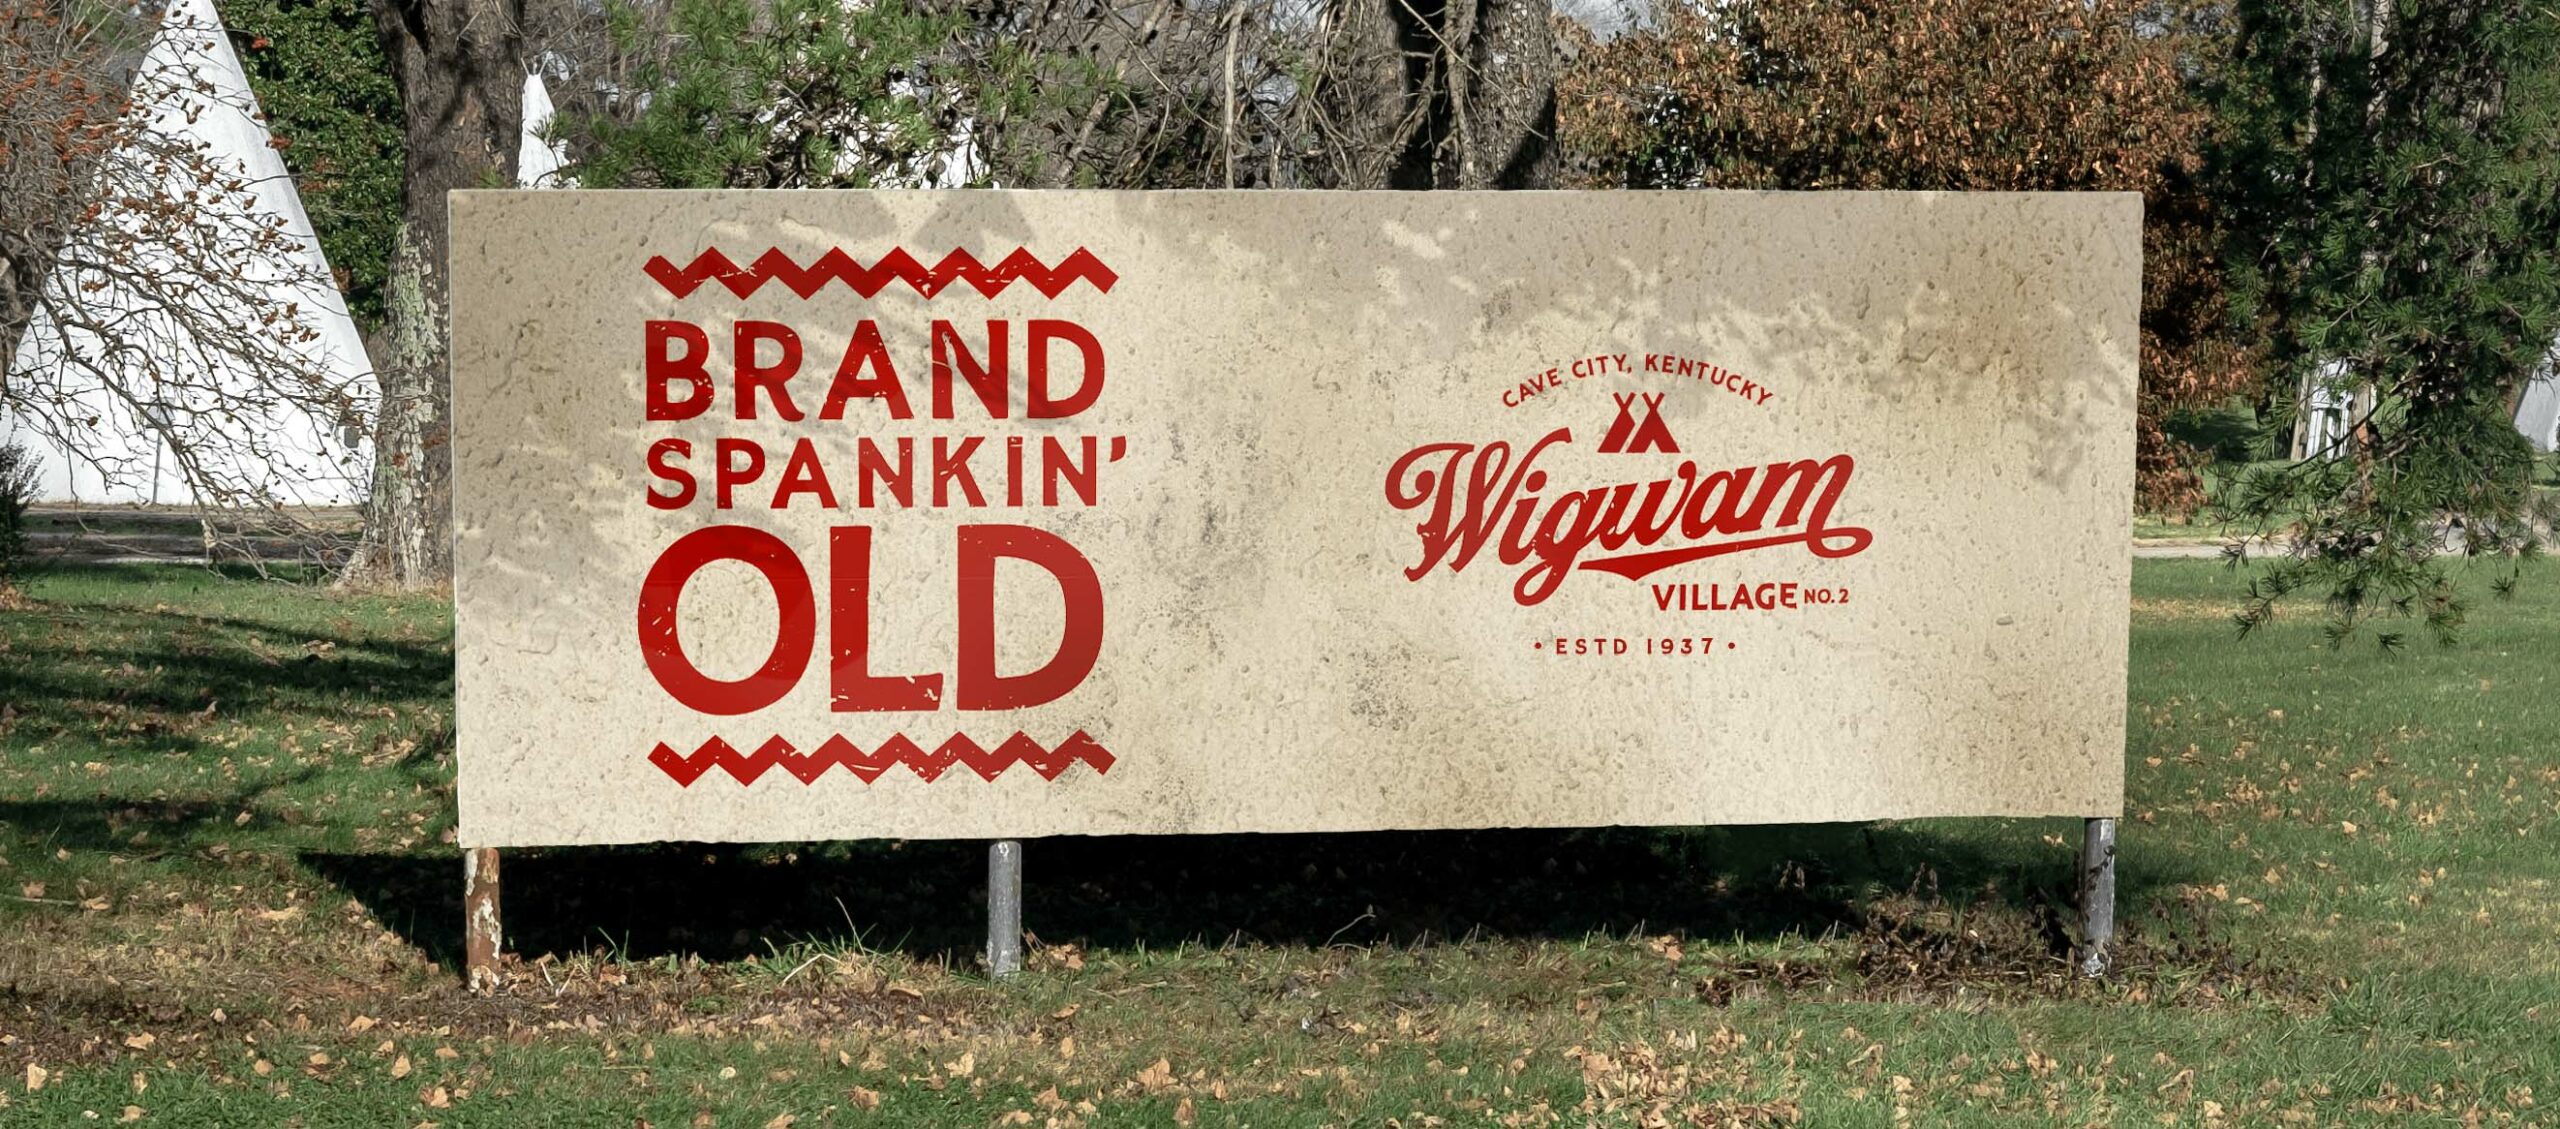 Wigwam Village No. 2 Brand Spankin' Old